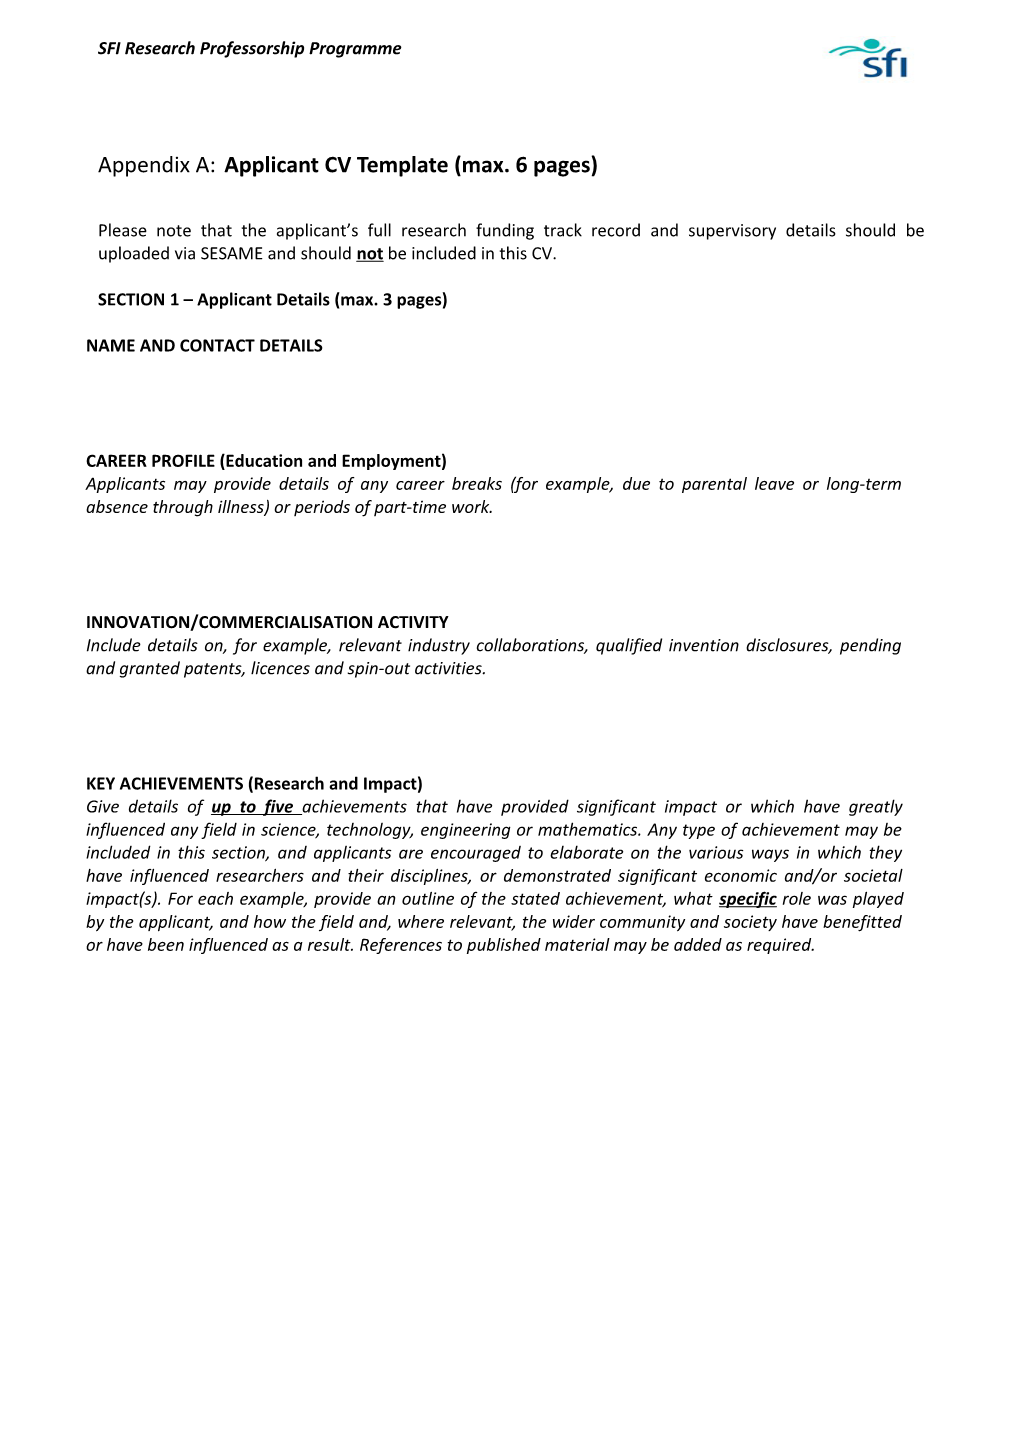 Appendix A: Applicant CV Template (Max. 6 Pages)